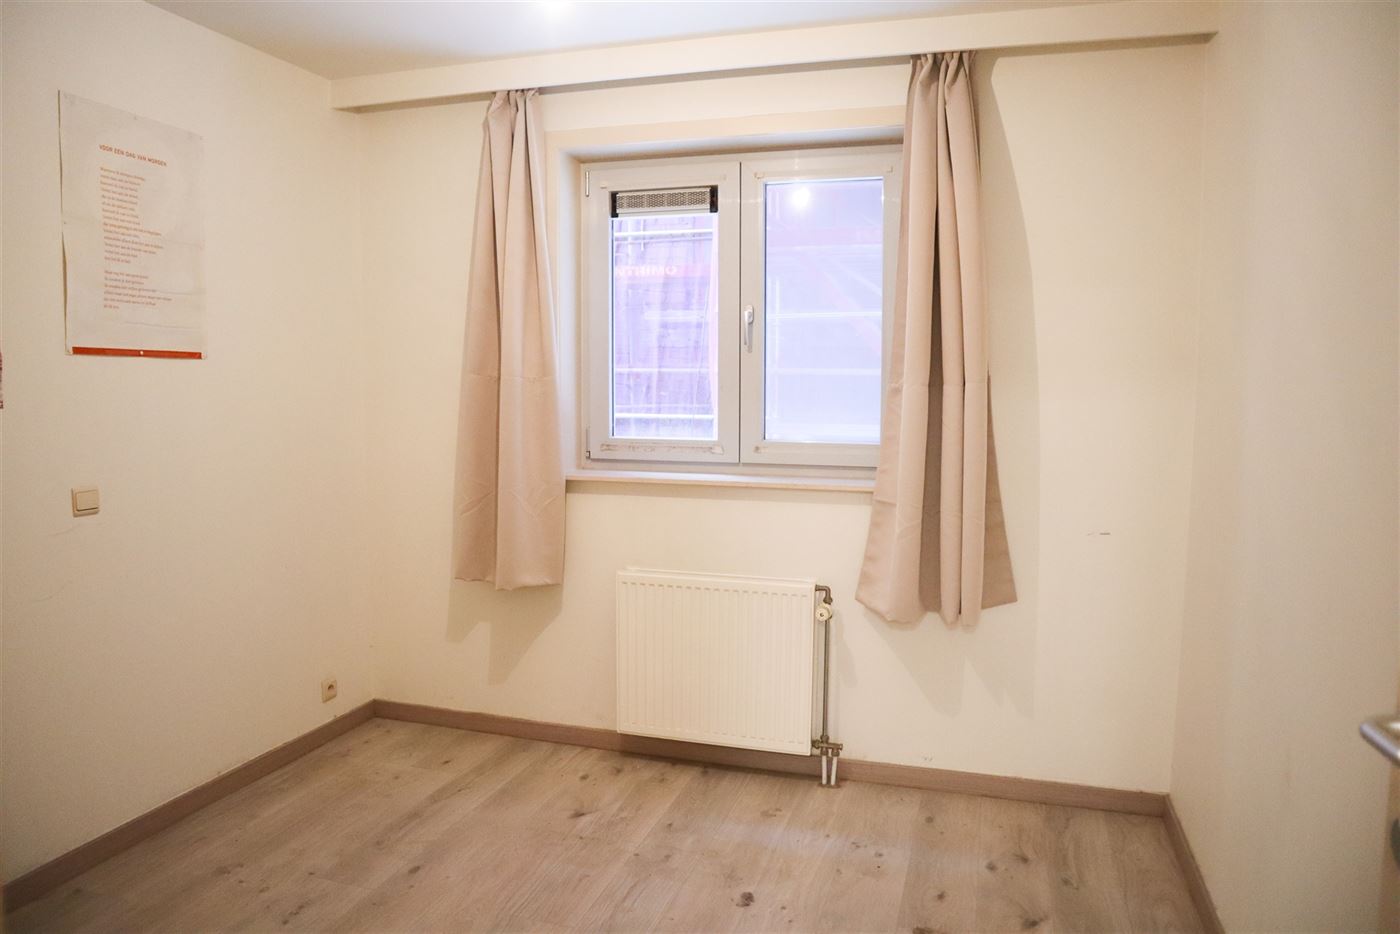 Res. Hof van Vlaanderen 272-0102 - Zonnig appartement met twee slaapkamers - Gelegen op de eerste verdieping in de winkelstraat aan de Sint Bernardusk...